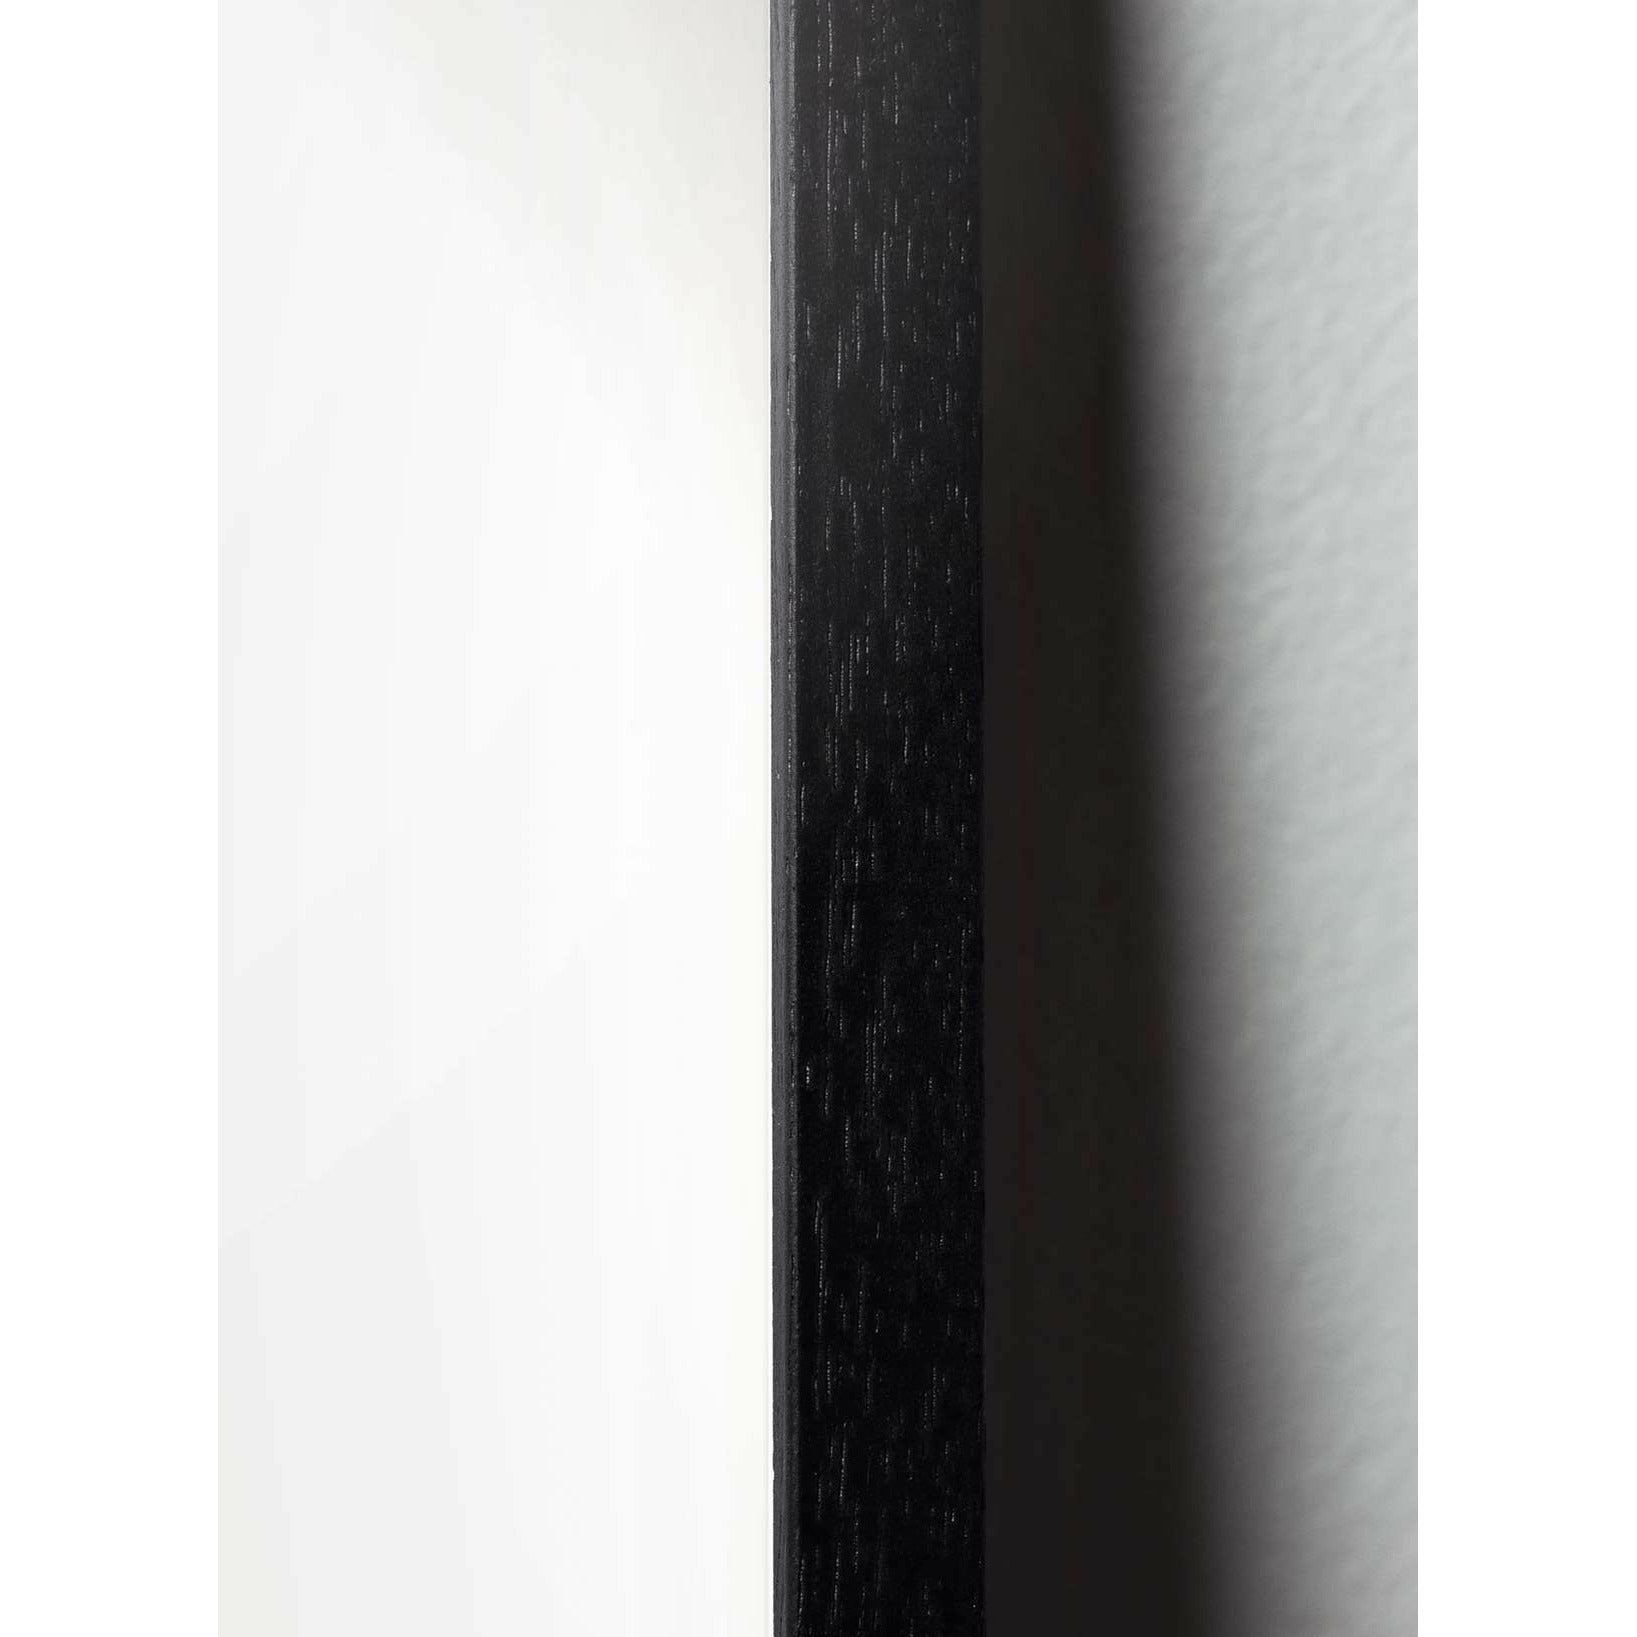 Brainchild Swan Paper Clip Poster, frame in zwart gelakt hout 50x70 cm, roze achtergrond